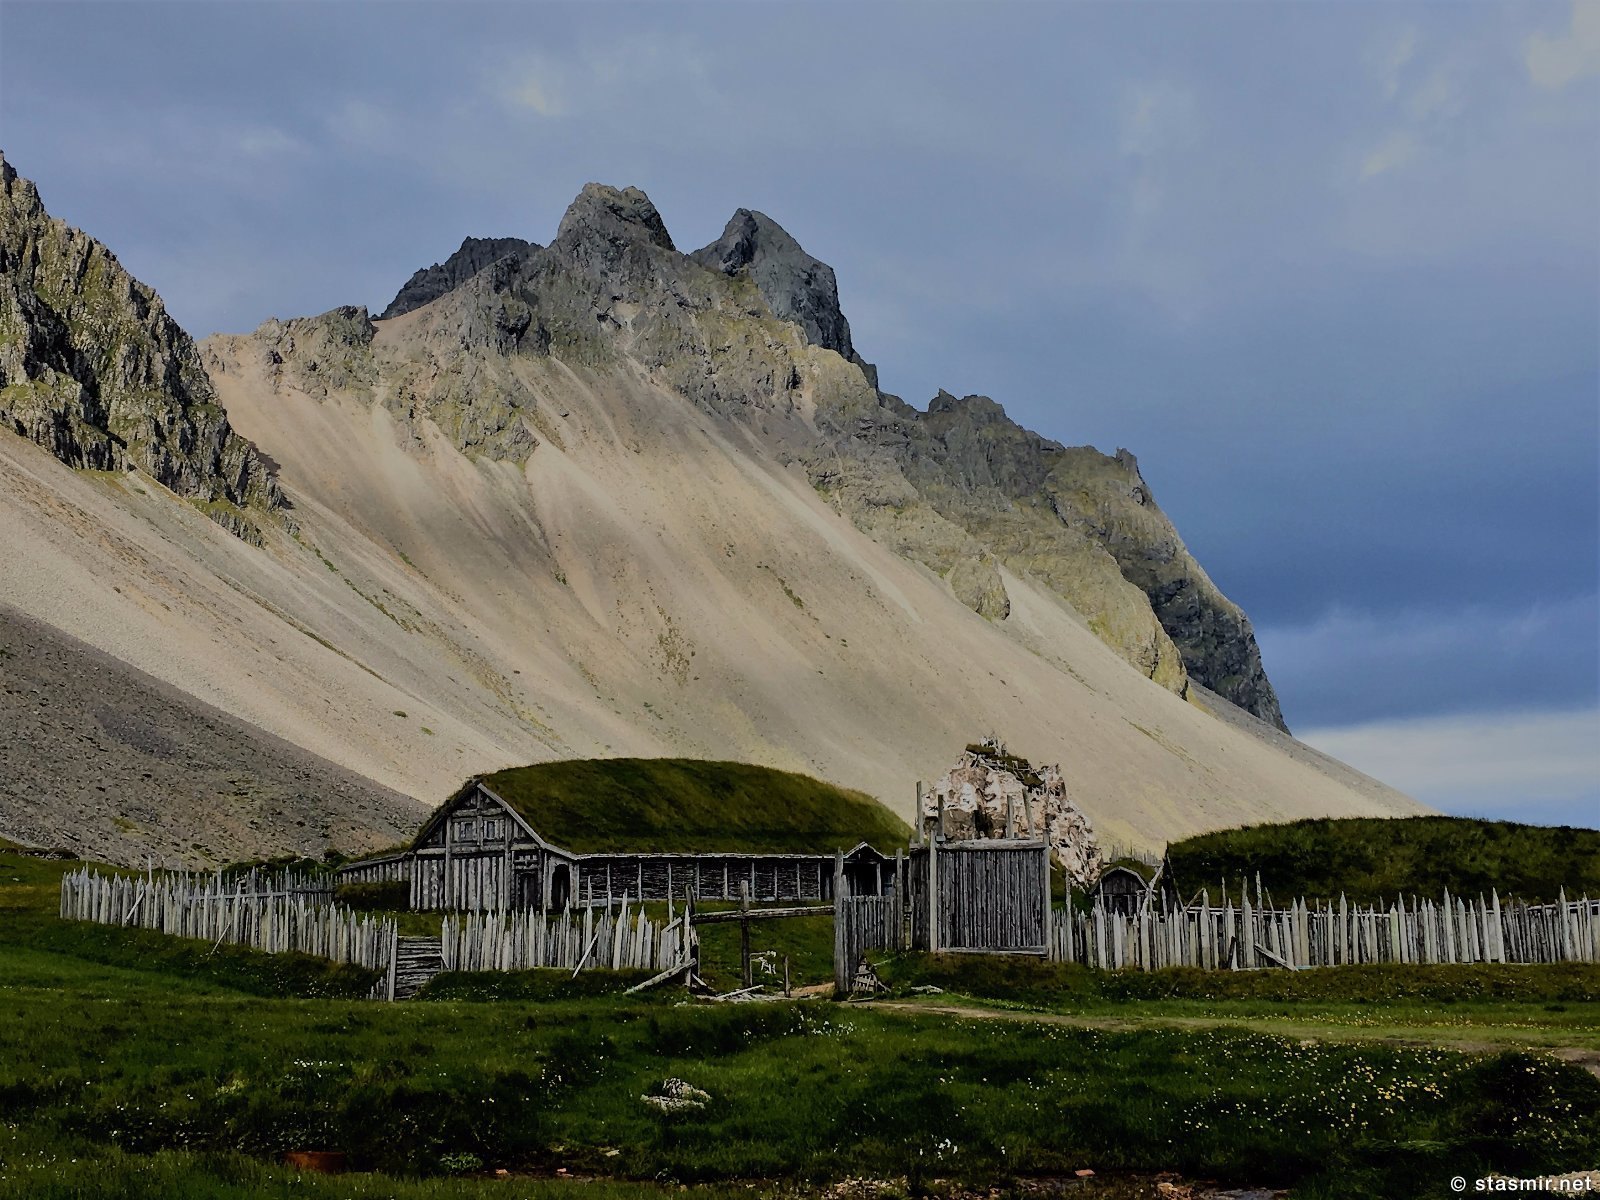 голливудская деревня викингов в Исландии, фото Стасмир, photo Stasmir, площадка съемки фильма про викингов в Исландии, декорации деревни викингов в Исландии